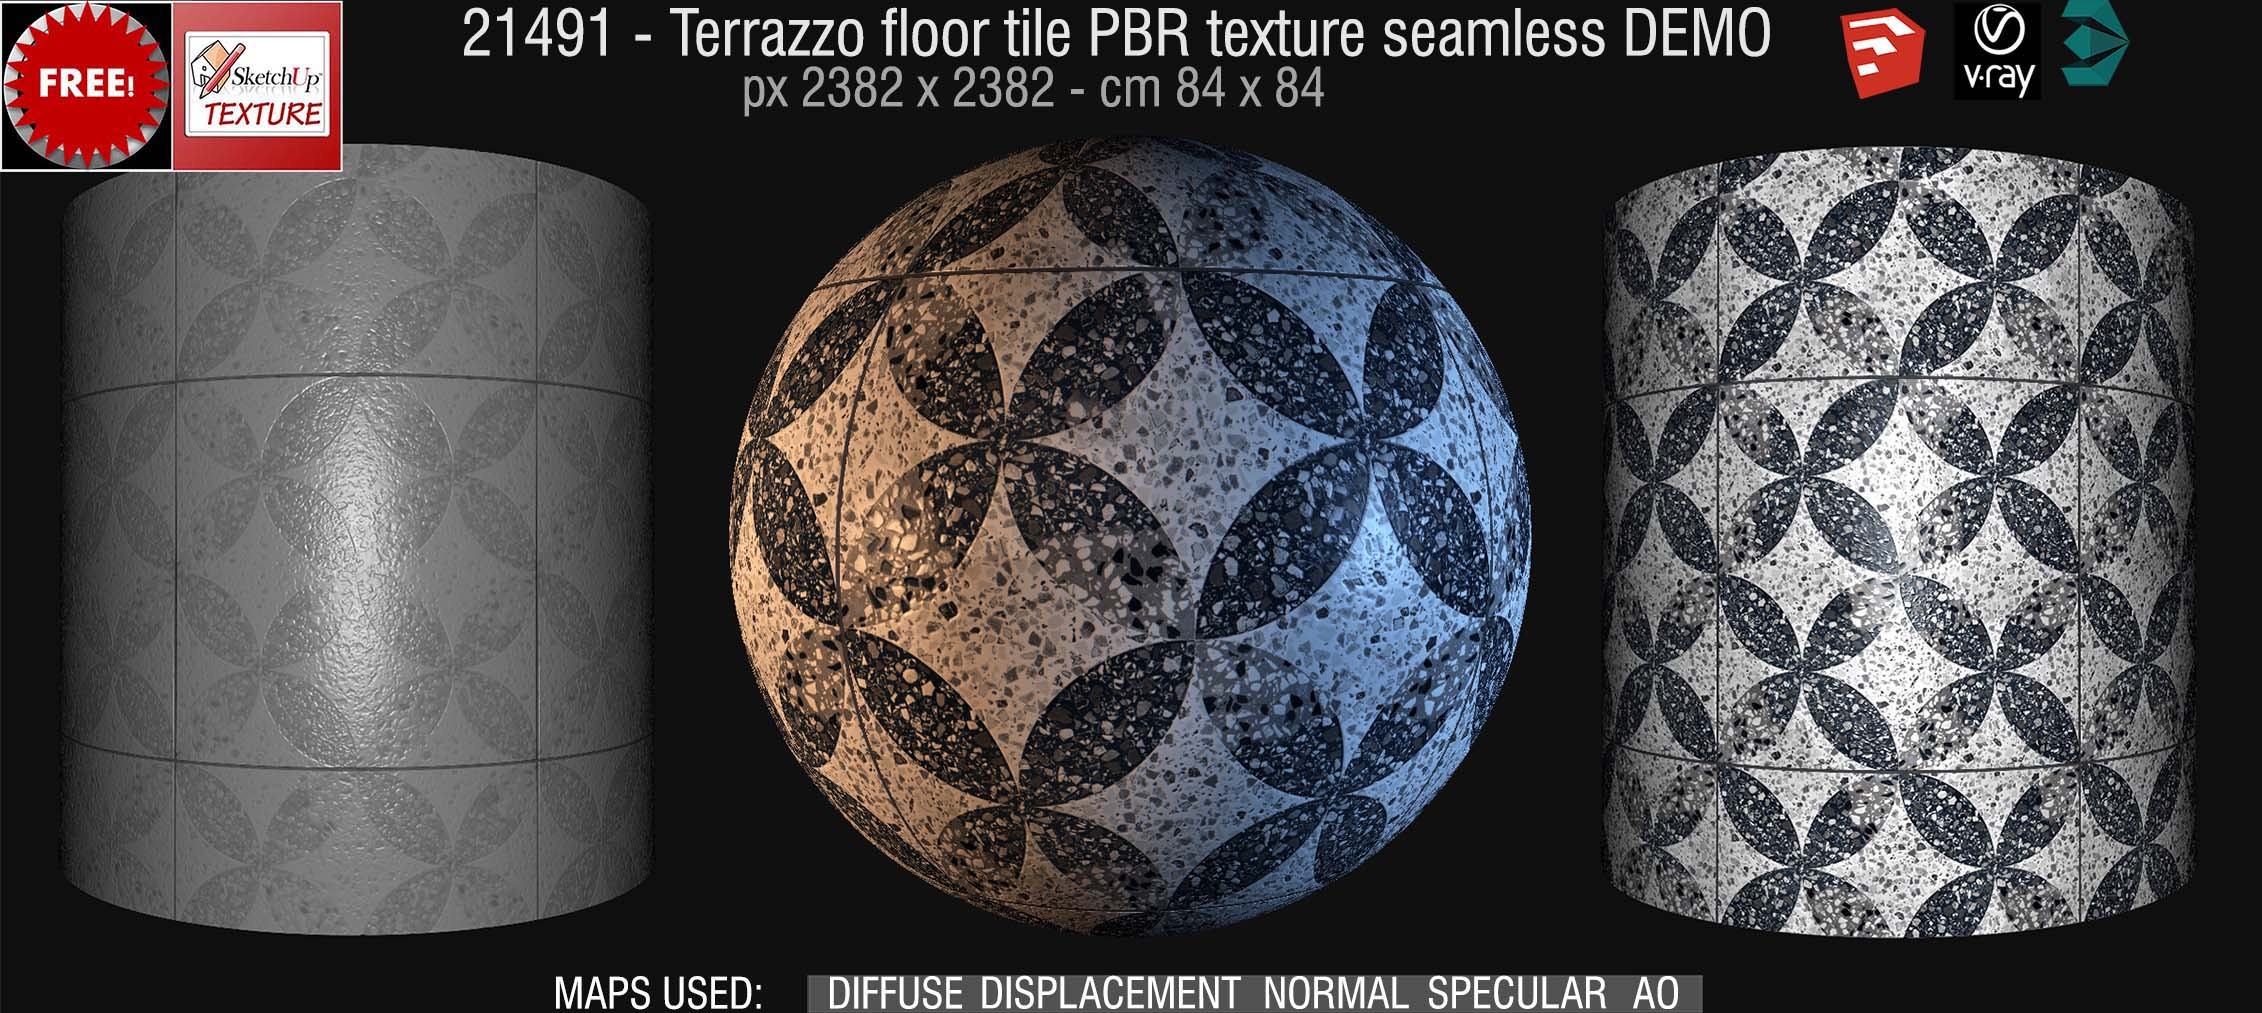 21491 terrazzo floor tile PBR texture seamless DEMO